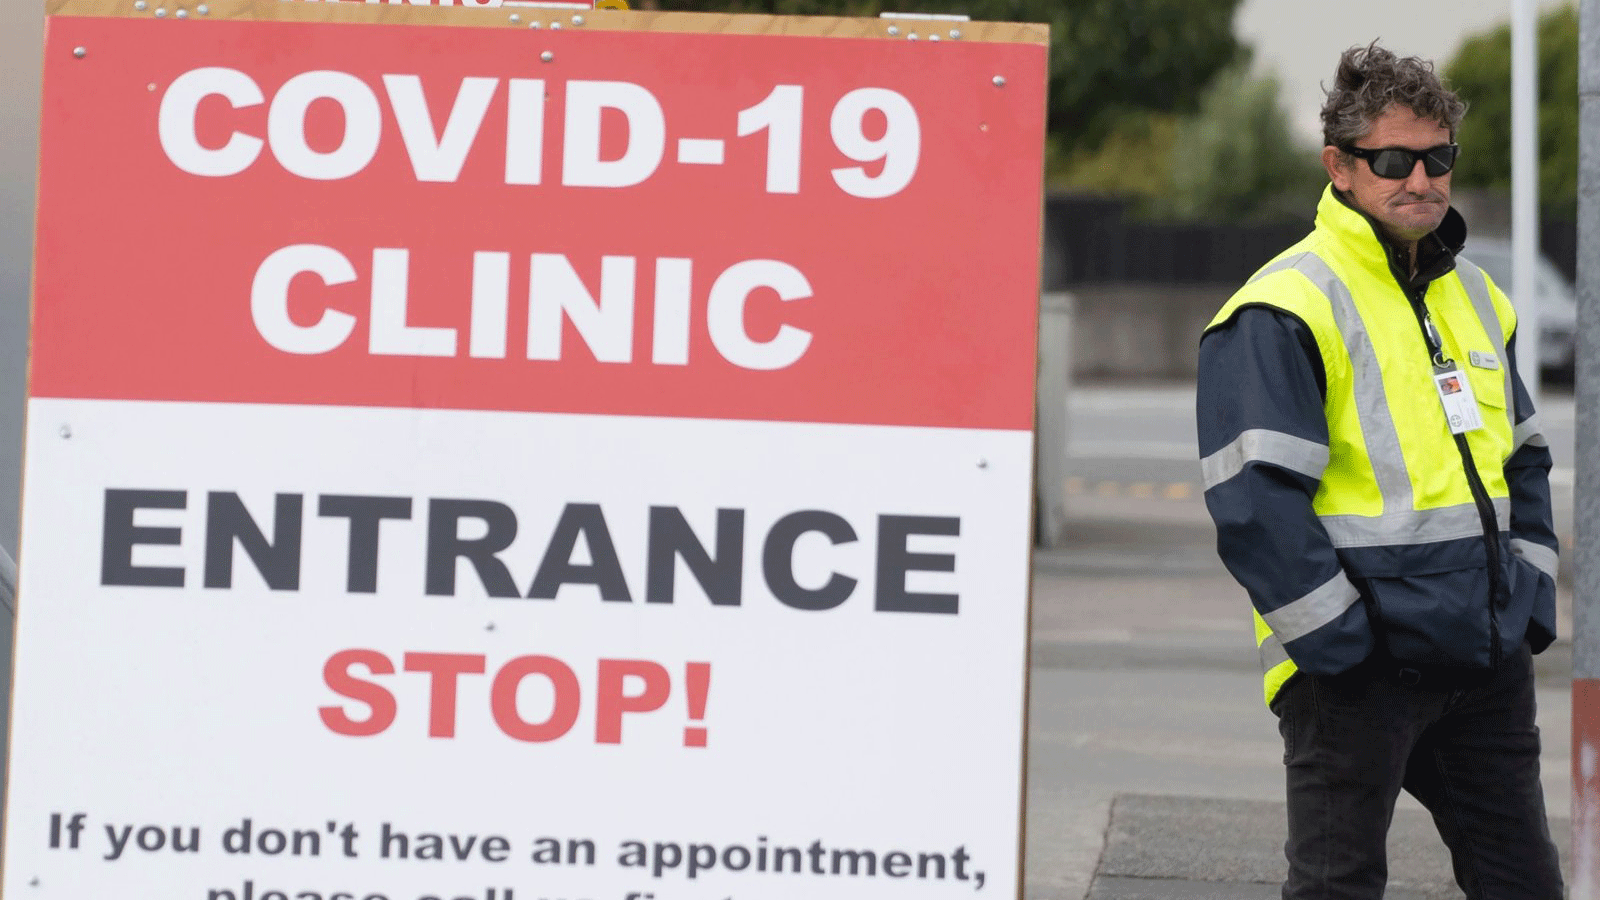 حارس أمن يقف خارج عيادة فيروس كورونا COVID-19 في لوير هوت، بالقرب من ويلينغتون/ نيوزيلندا. 20 نيسان/أبريل 2020